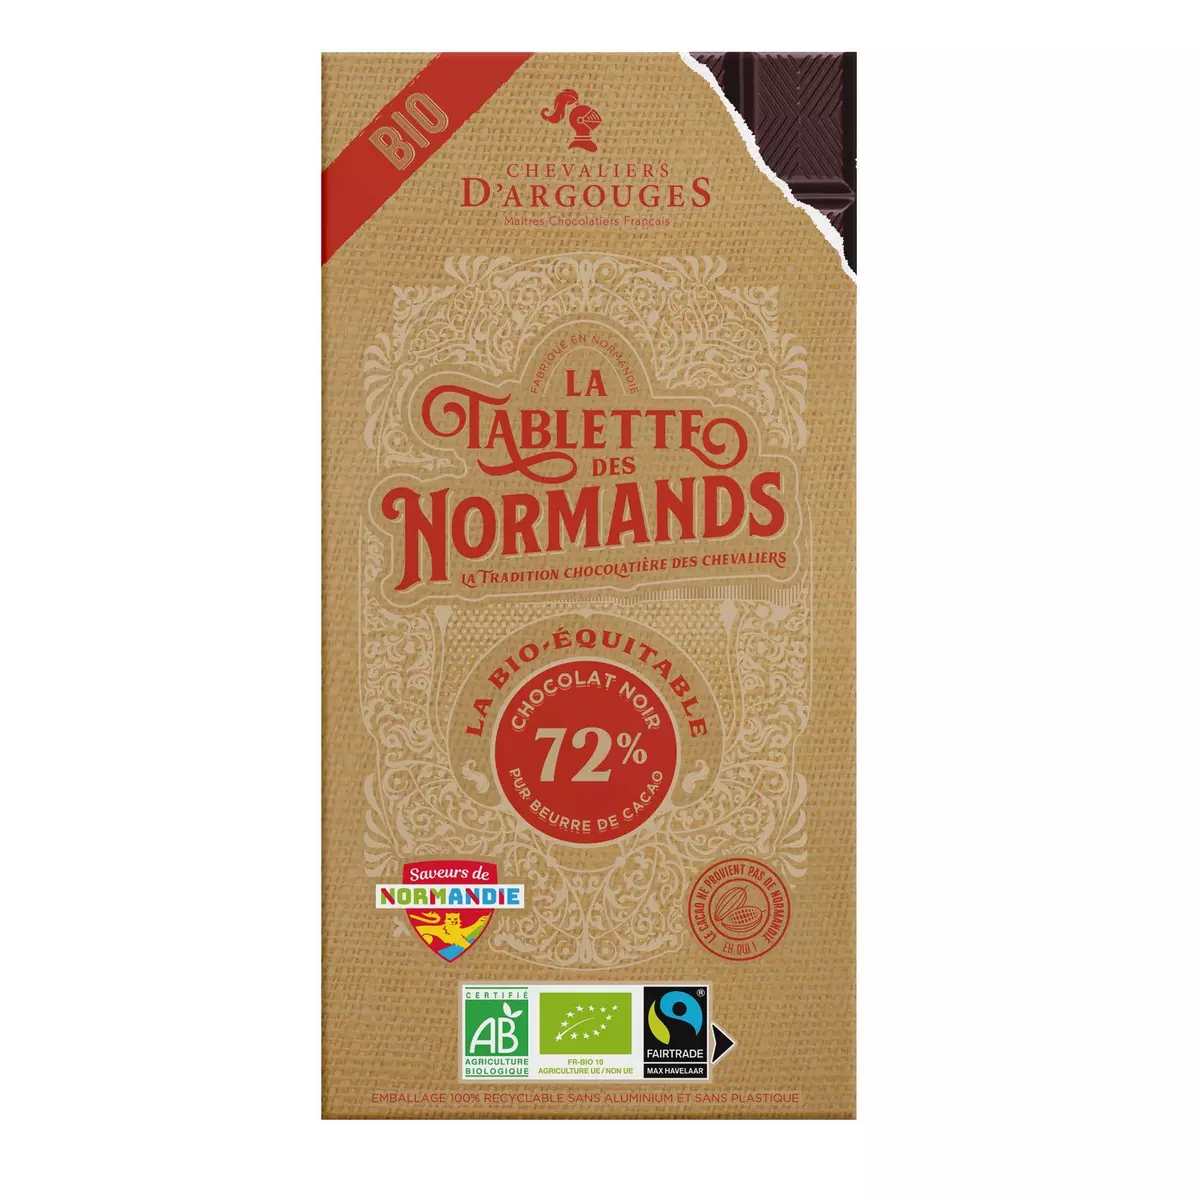 CHEVALIERS D'ARGOUGES Tablette des Normands au chocolat noir 72% cacao bio 100g